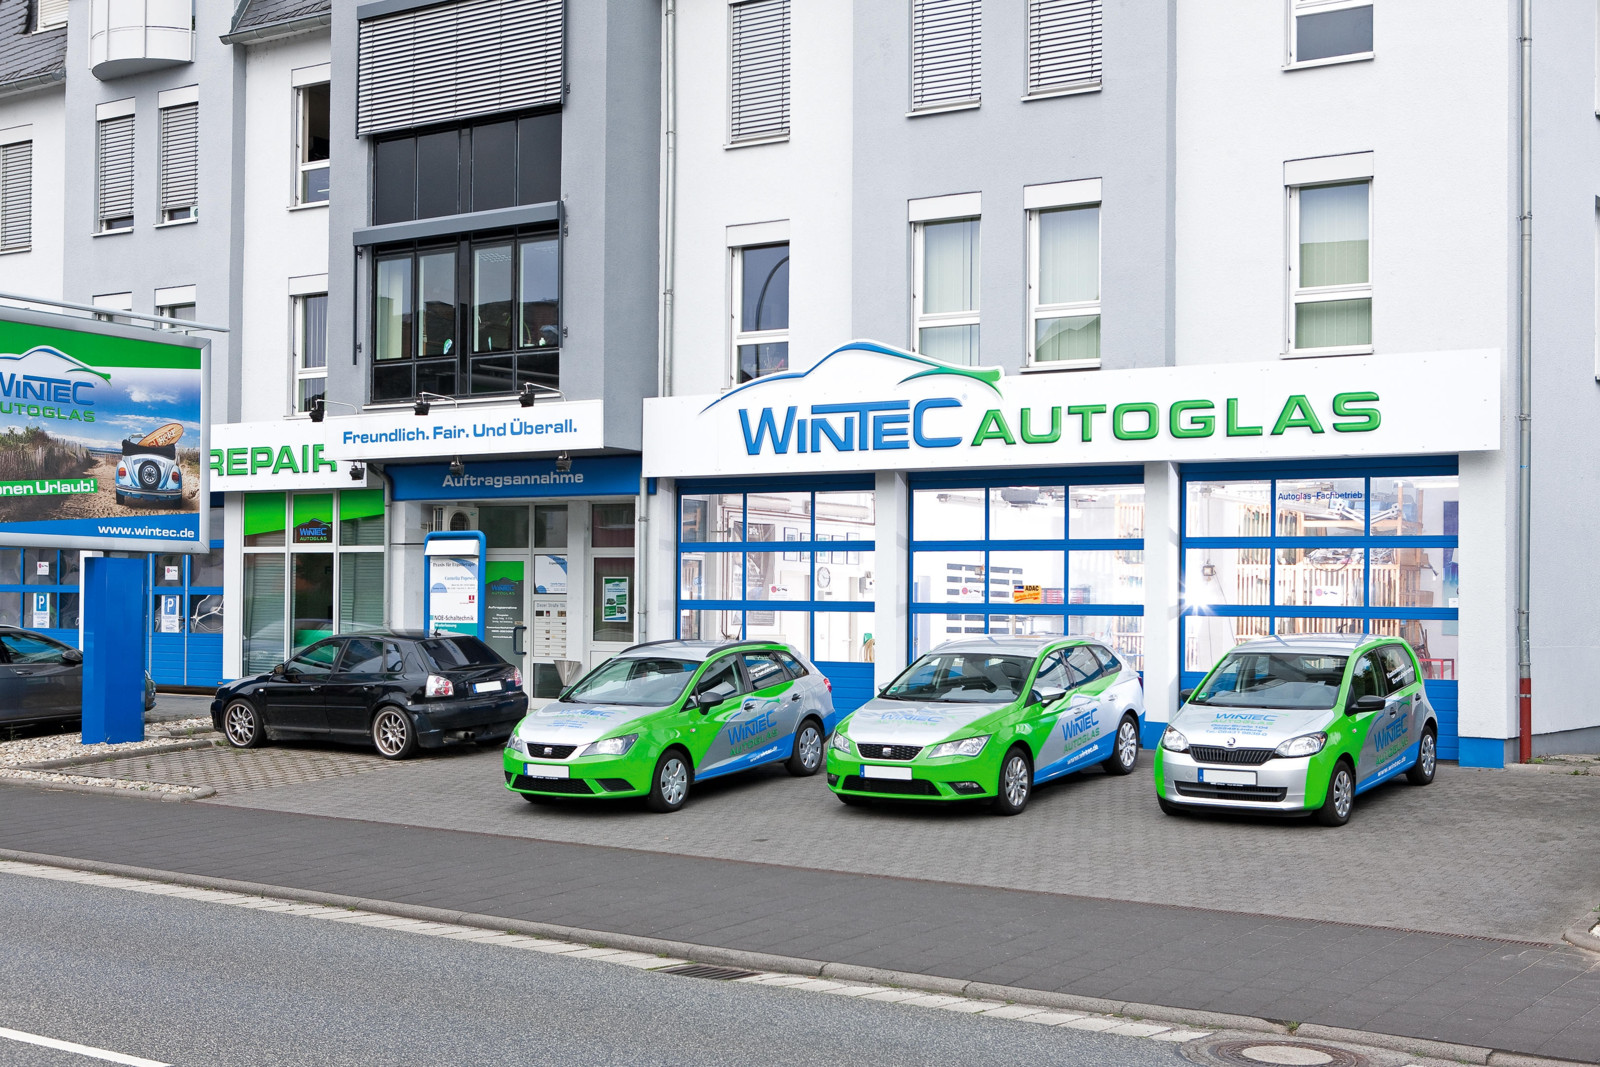 WinTec übernimmt gemeinsam mit der Sky Holding GmbH den Autoglasspezialisten KS Partner